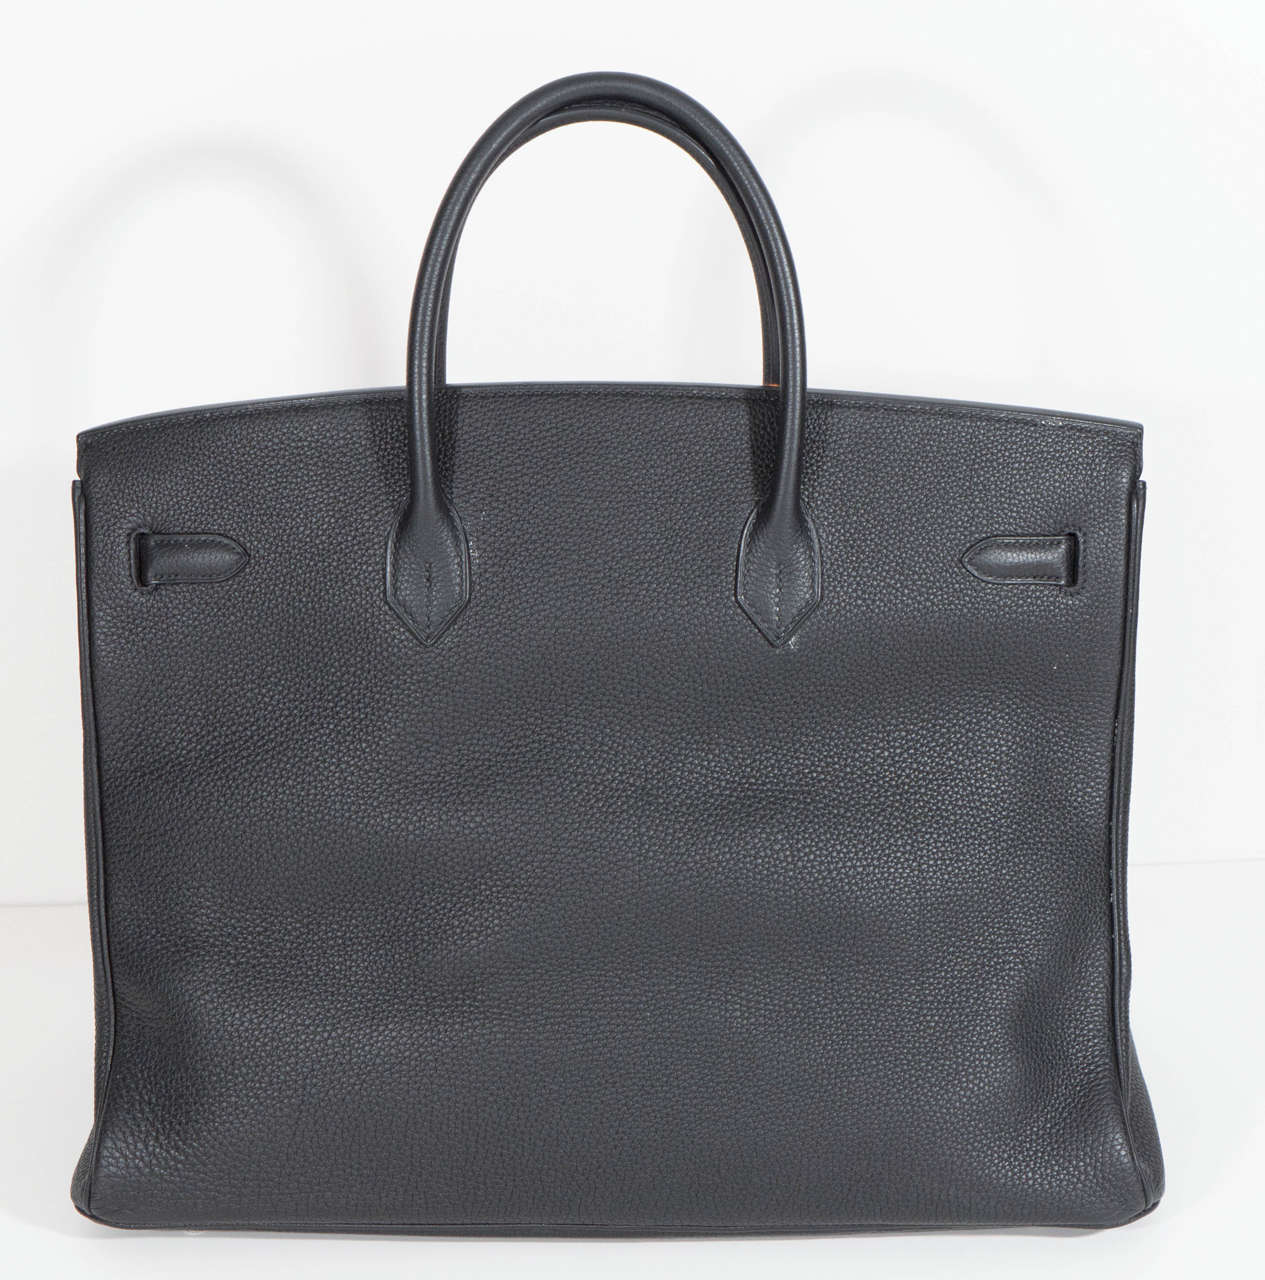 Hermès Paris Birkin Bag 40 in Togo Leather with Palladium Hardware, 2008 For Sale 3